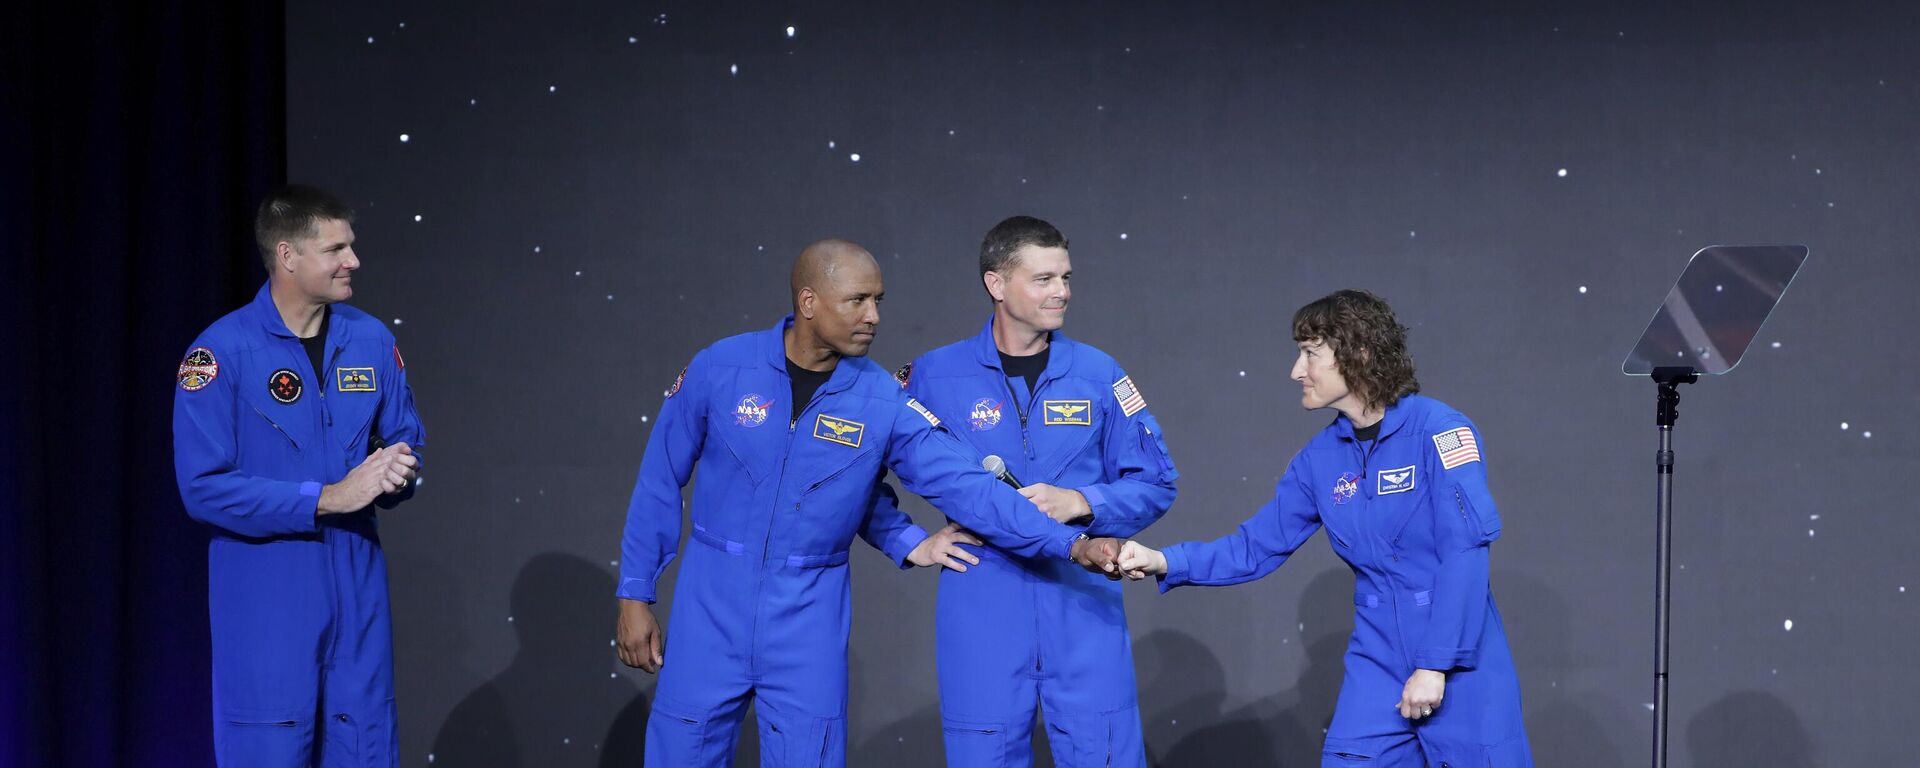 Jeremy Hansen, Victor Glover, Reid Wiseman y Christina Hammock Koch, celebran en el escenario al ser anunciados como la tripulación del Artemis II durante una ceremonia de la NASA, el lunes 3 de abril de 2023, en Houston, EEUU  - Sputnik Mundo, 1920, 03.04.2023